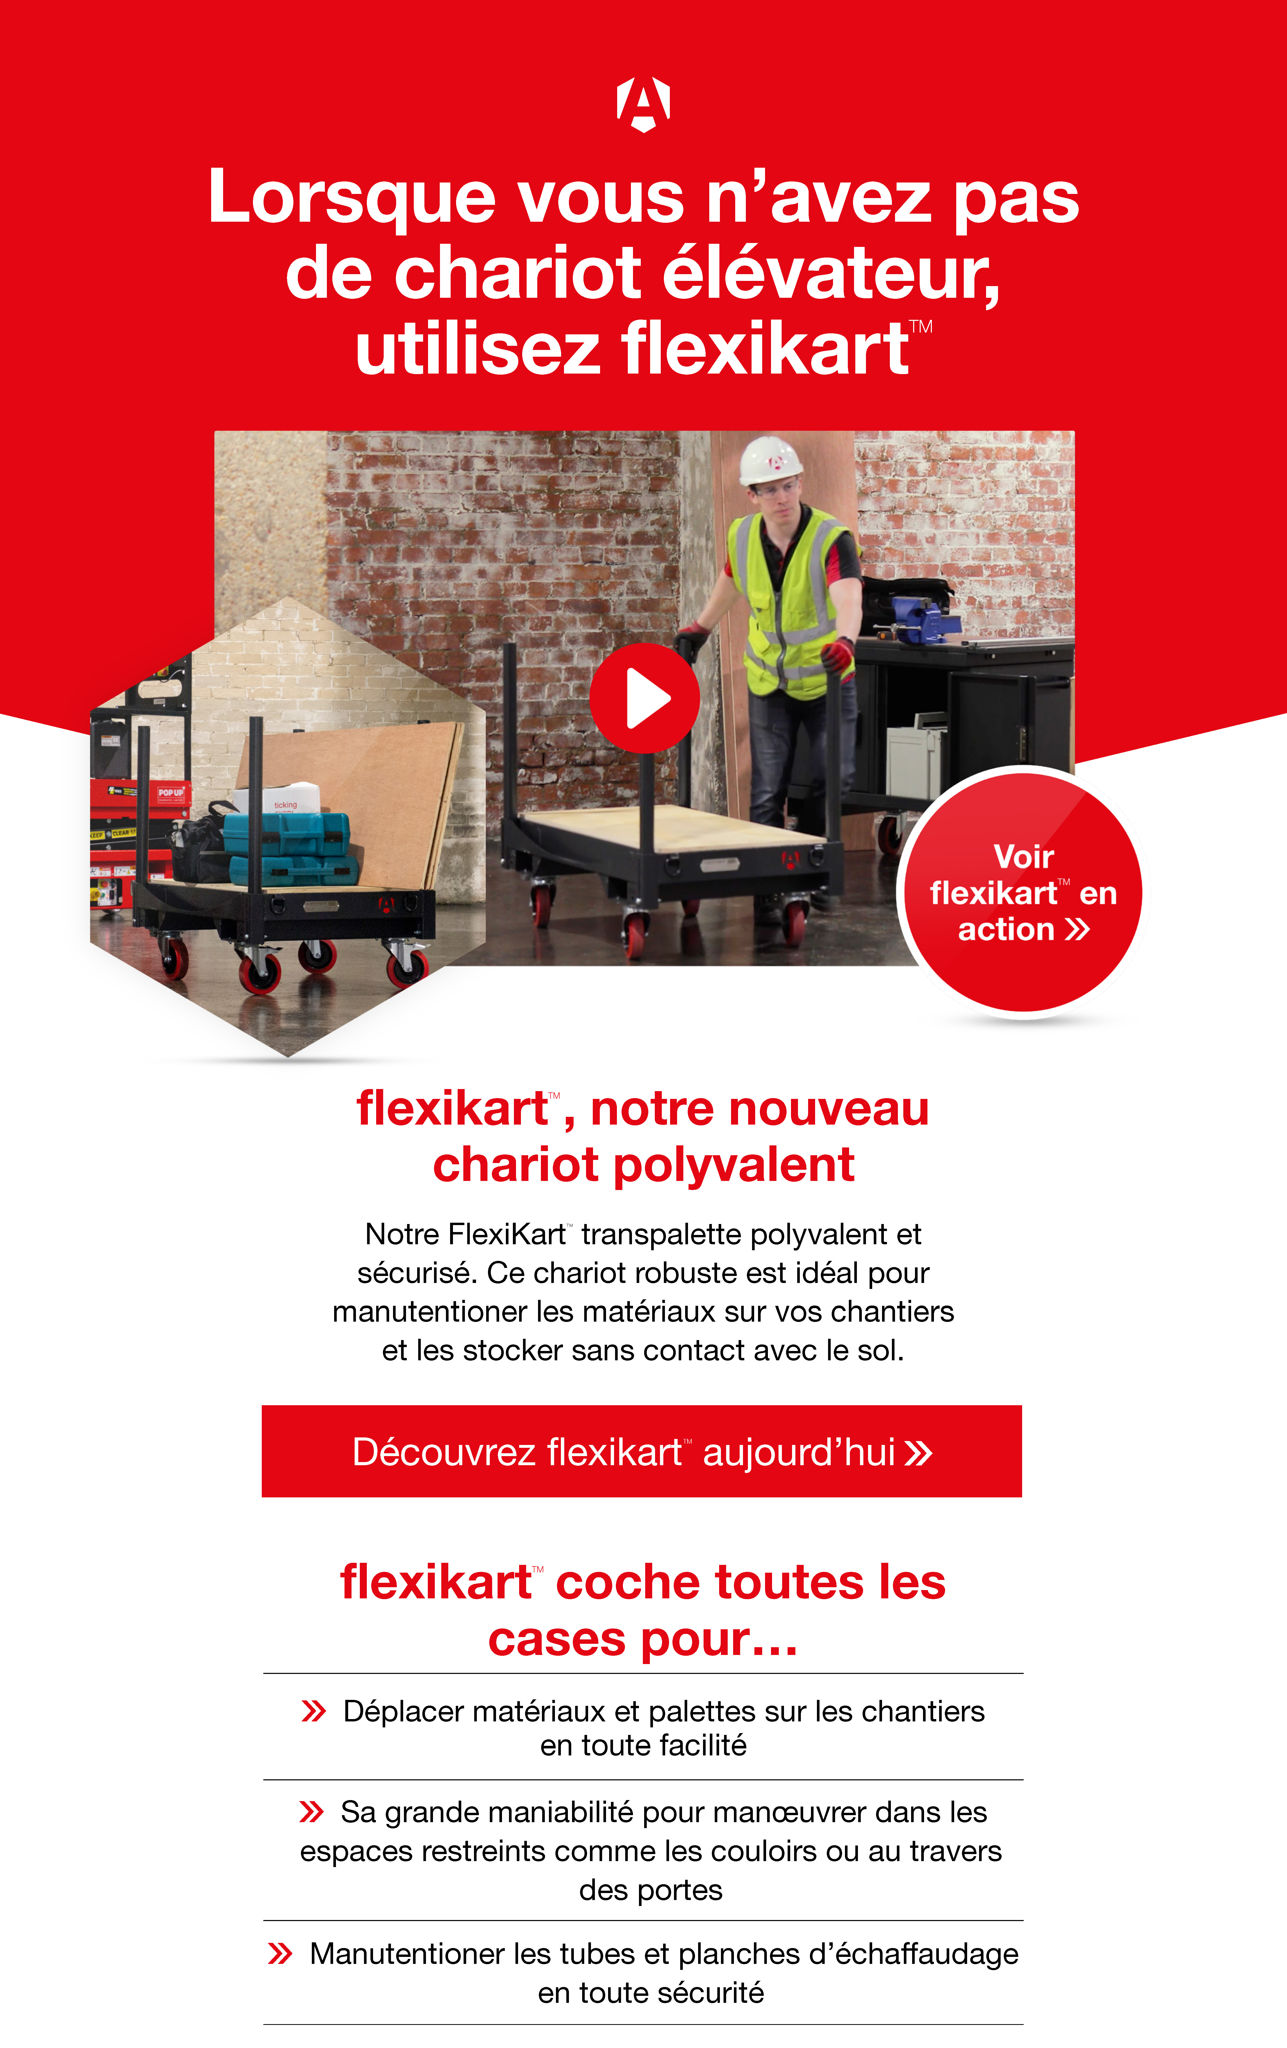 FR FlexiKart Assets (digital leaflet) 1